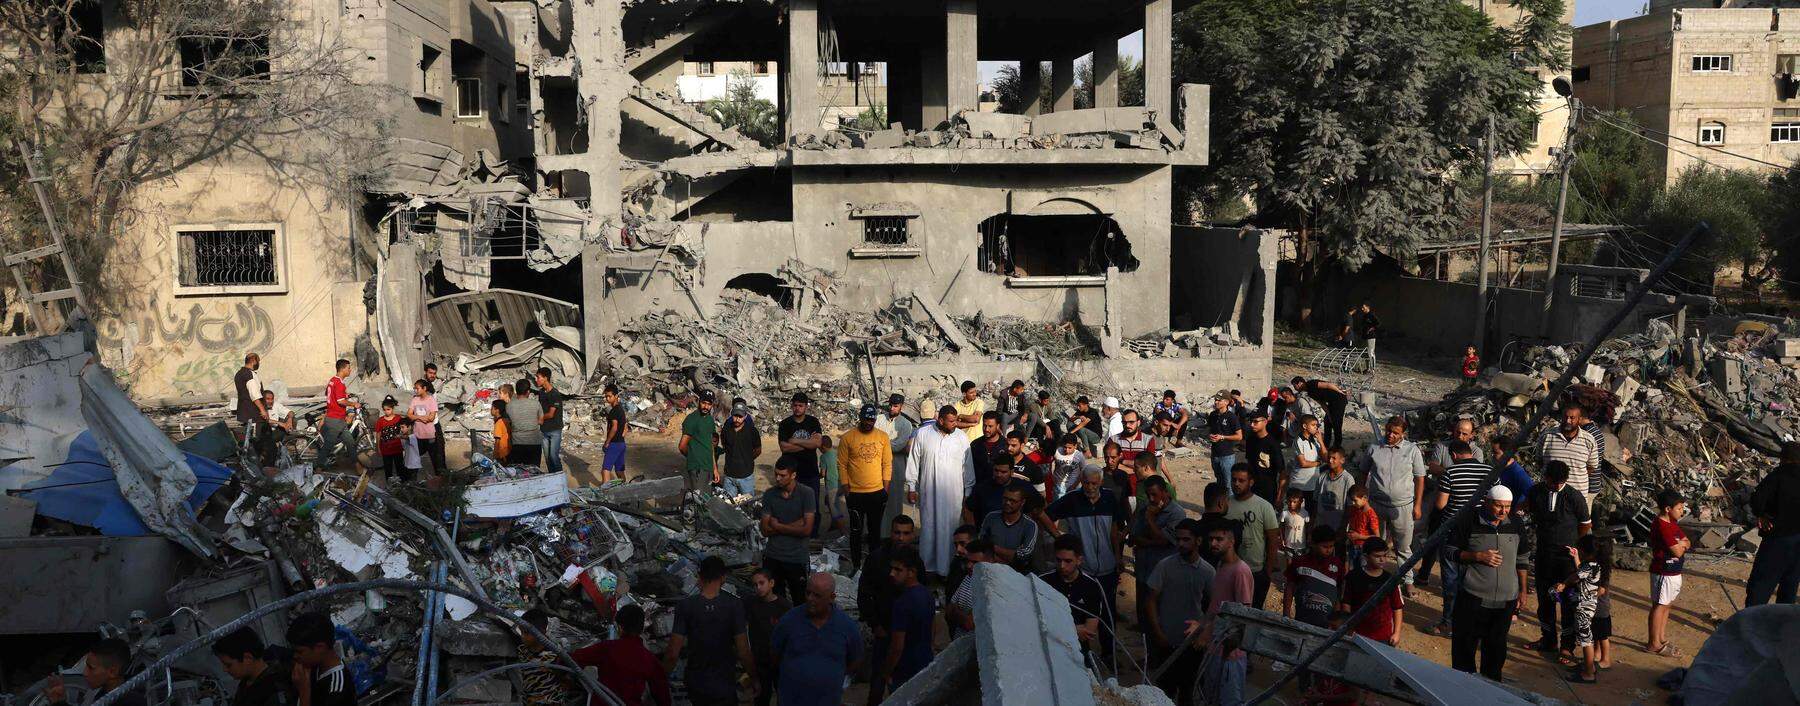 Tote, Trümmer und Verzweiflung nach heftigen israelischen Bombardements im Gazastreifen. Die humanitäre Hilfe läuft nur schleppend an. 